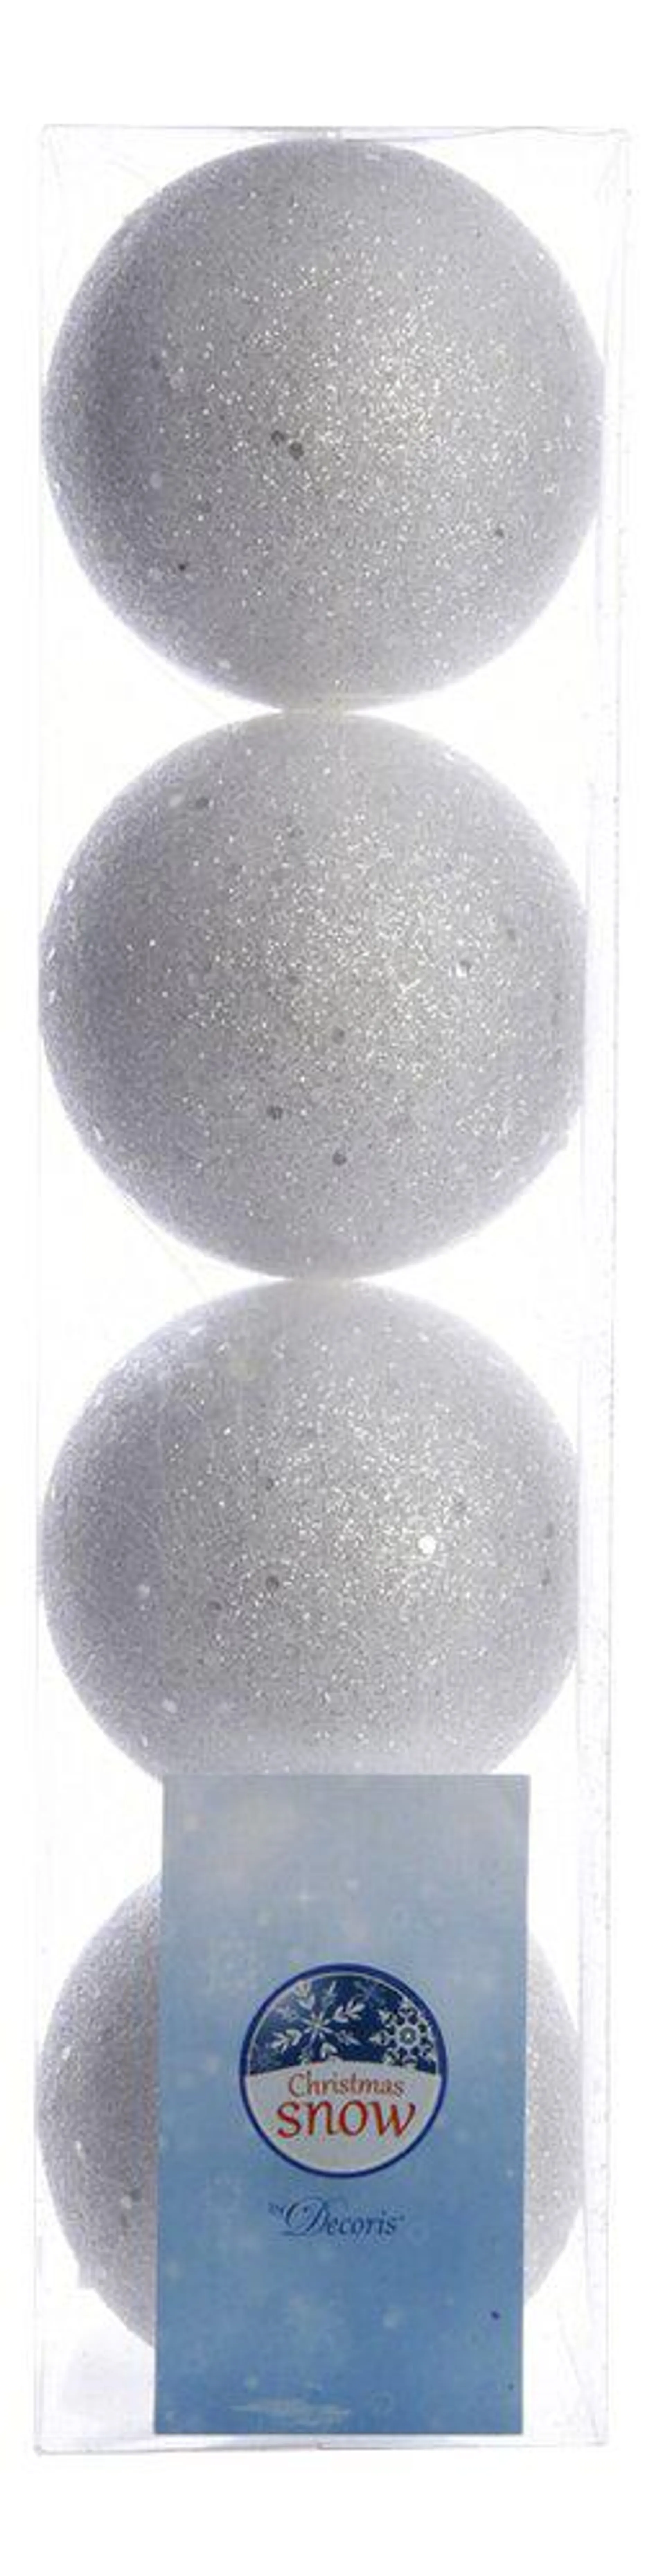 Kerstbal sneeuwbal wit/zilver - 4 stuks